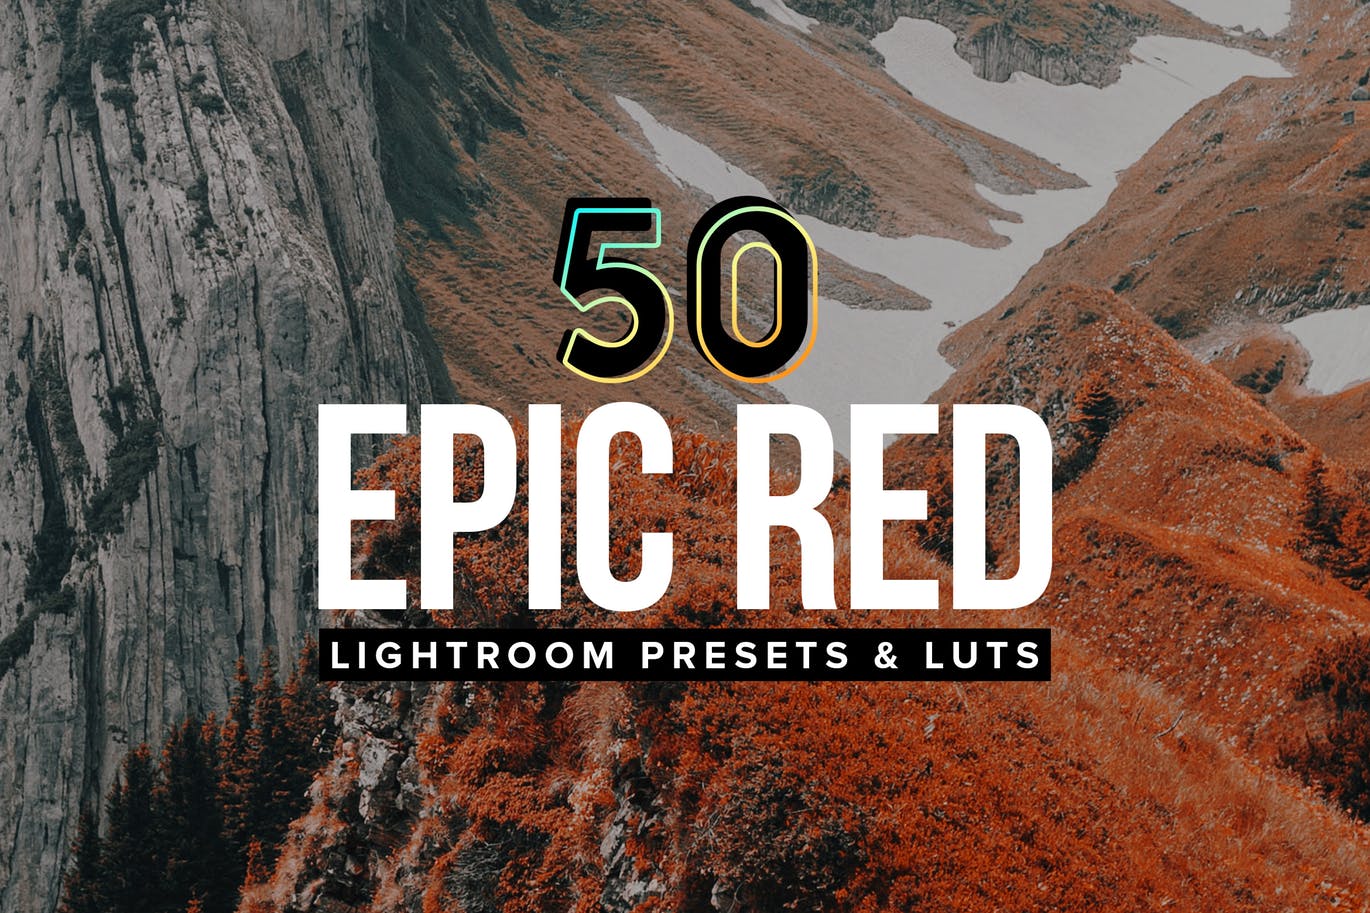 50款柯达Aerochrome红外胶片效果调色滤镜LR预设下载 50 Epic Red Lightroom Presets and LUTs插图